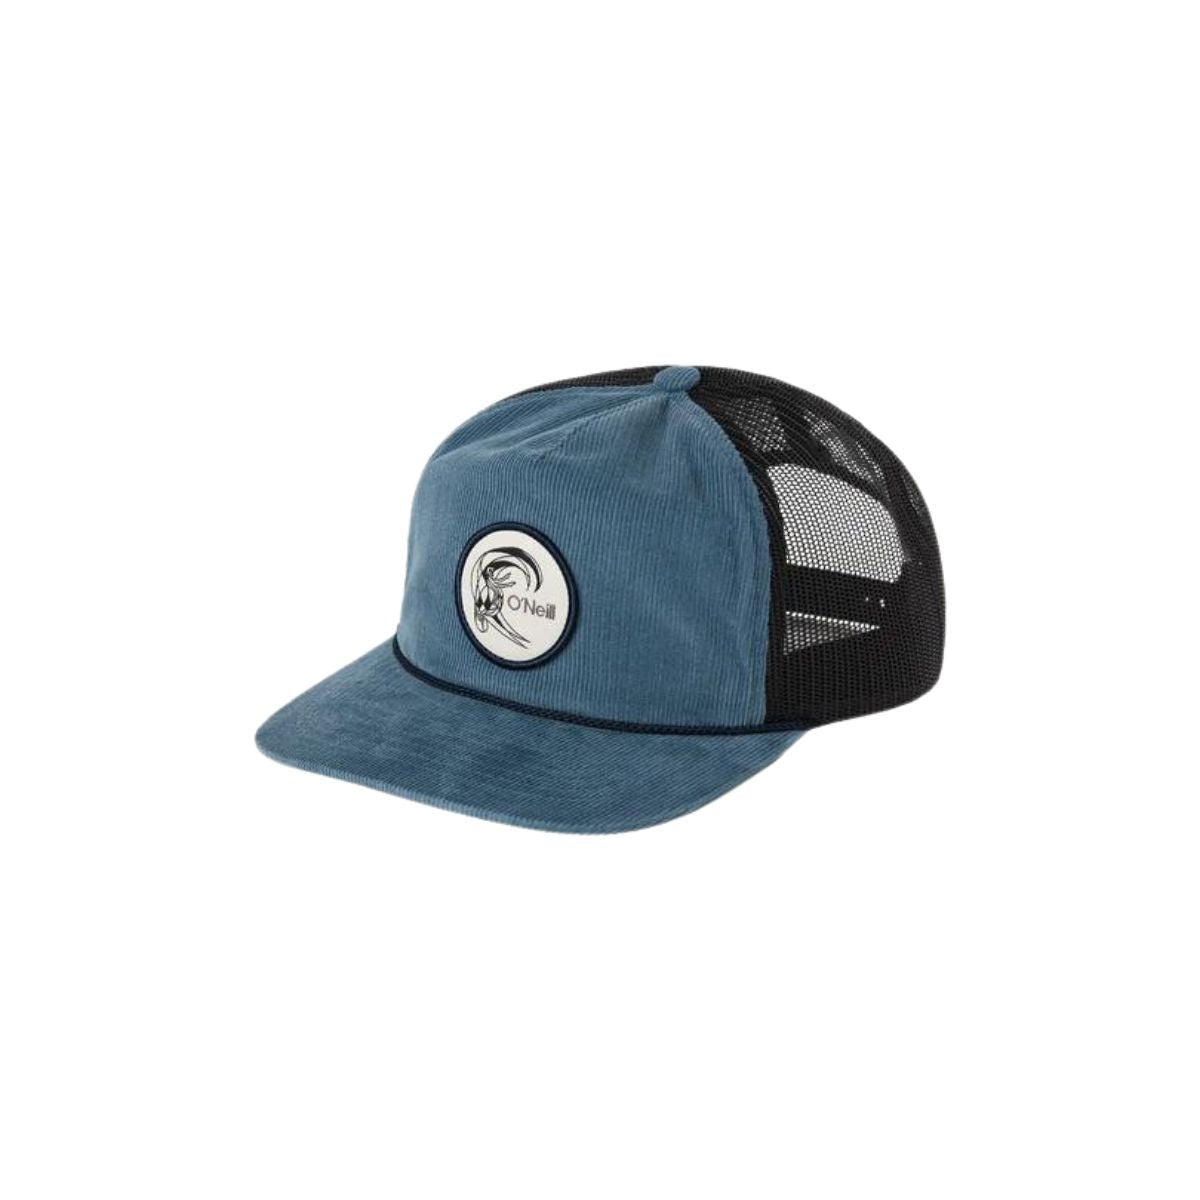 O'Neill Originals Trucker Hat in Copen Blue - BoardCo